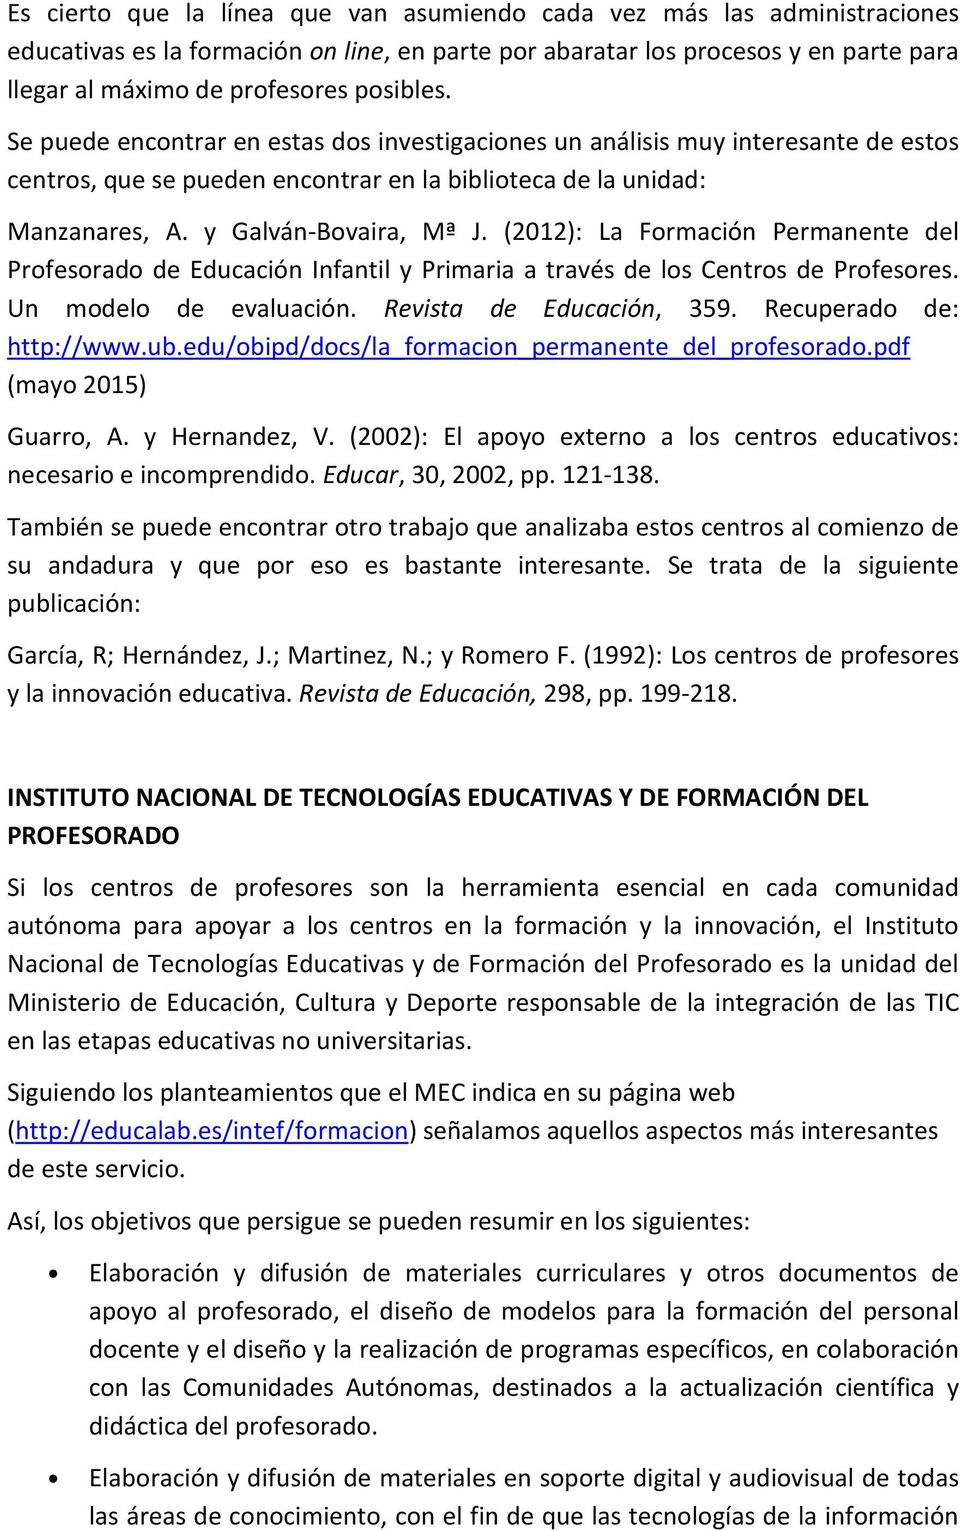 (2012): La Formación Permanente del Profesorado de Educación Infantil y Primaria a través de los Centros de Profesores. Un modelo de evaluación. Revista de Educación, 359. Recuperado de: http://www.